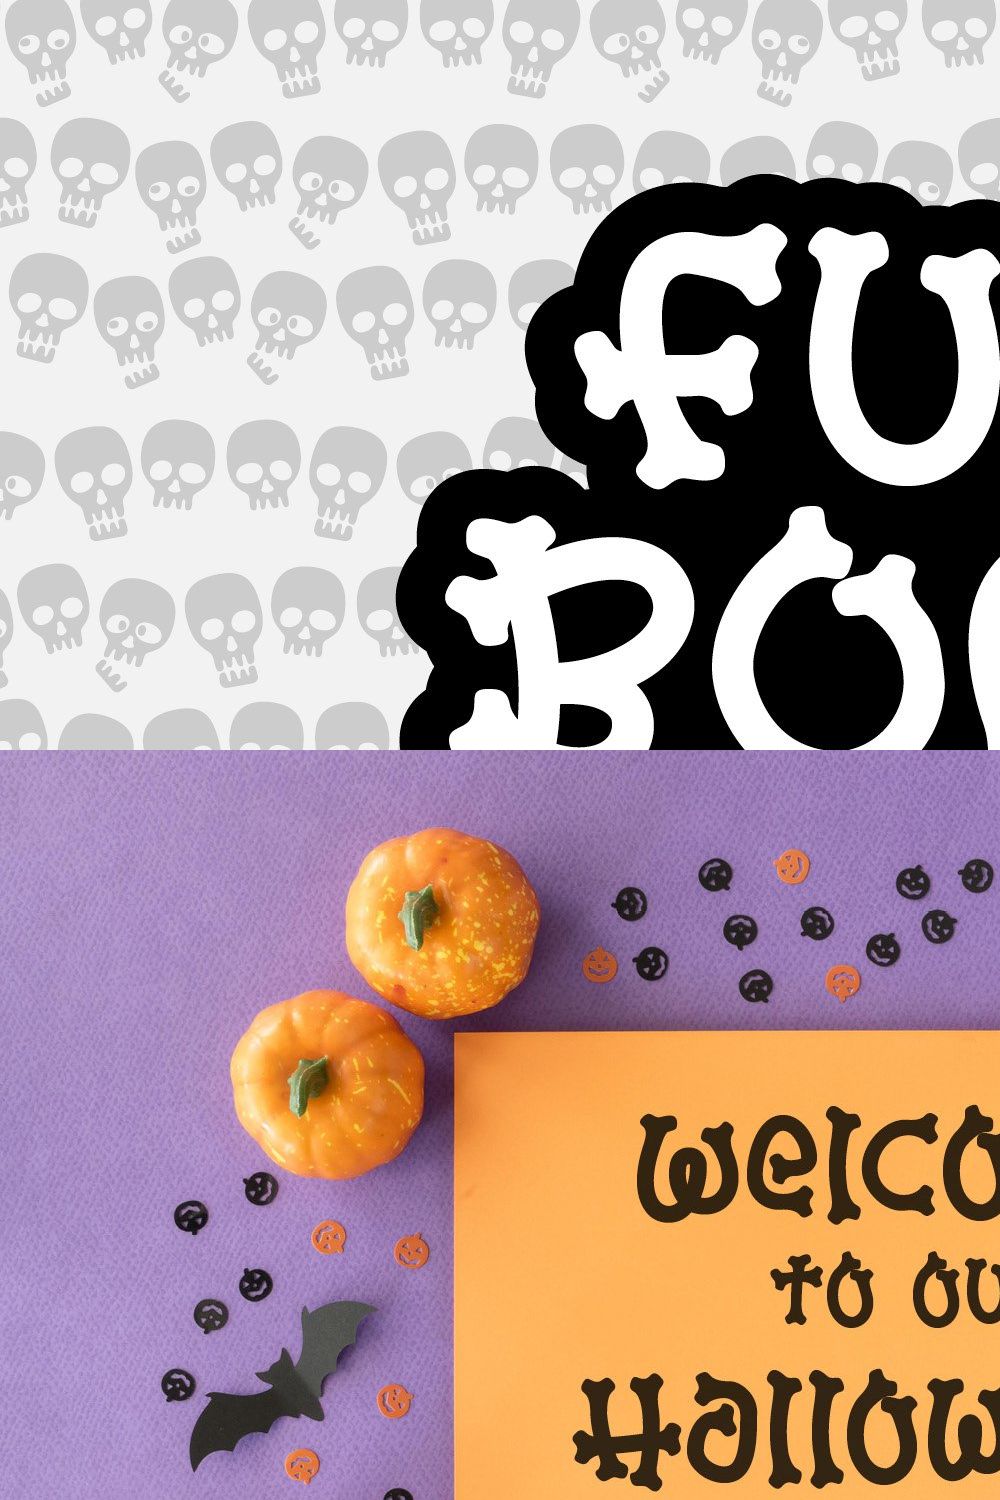 FUN BONE FONT | a Halloween Font pinterest preview image.